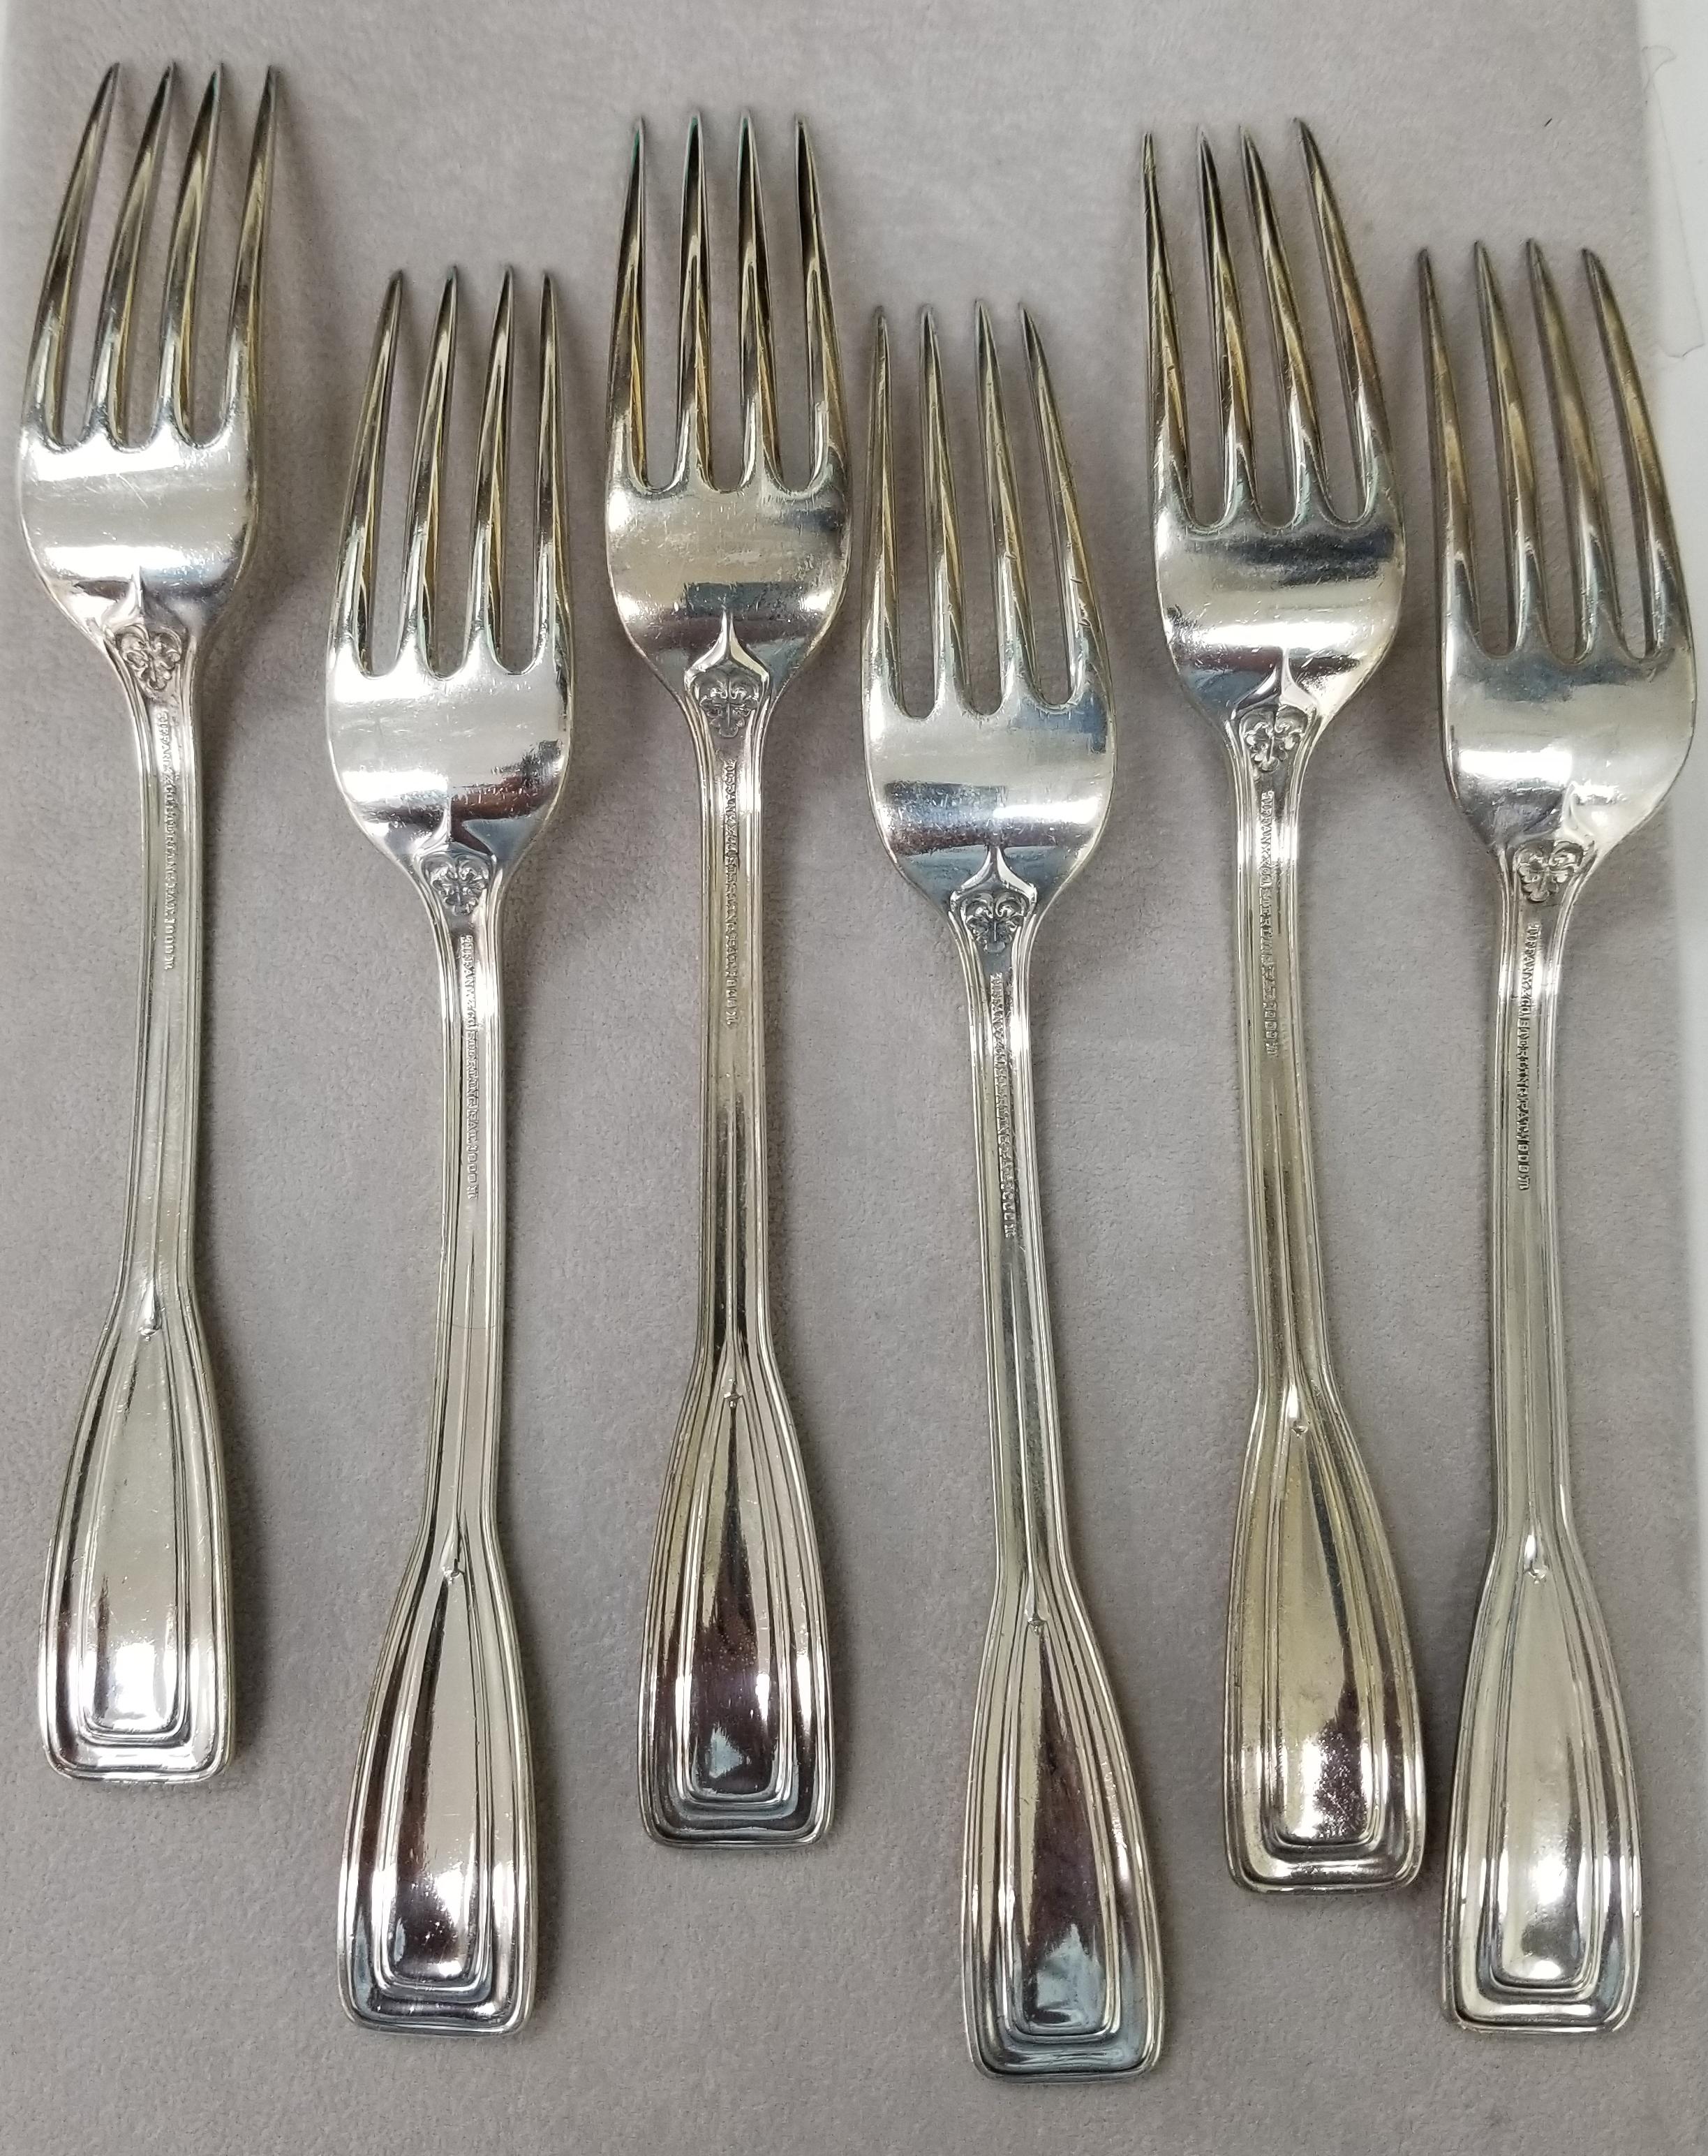 Tiffany & Co Sterling Flatware
St. Dunstan pattern
Set of 6 Dinner Forks
7 3/4